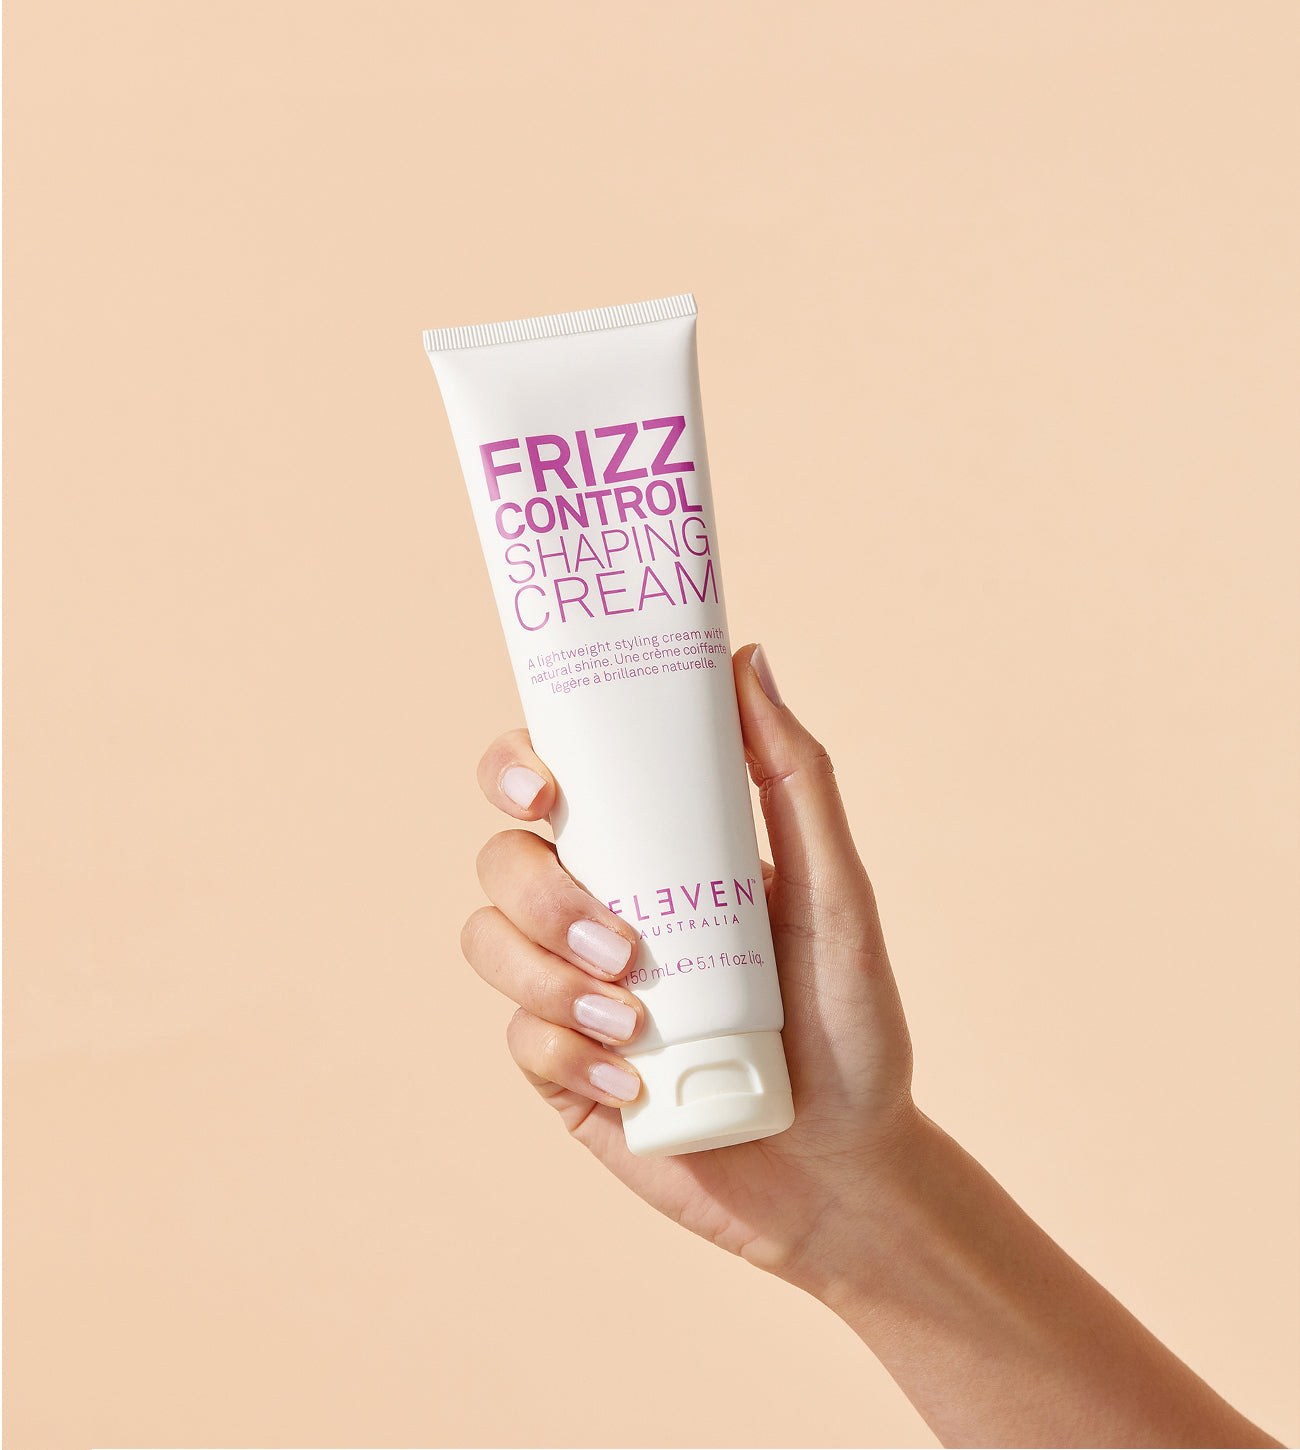 Frizz Control Shaping Cream - ELEVEN Australia